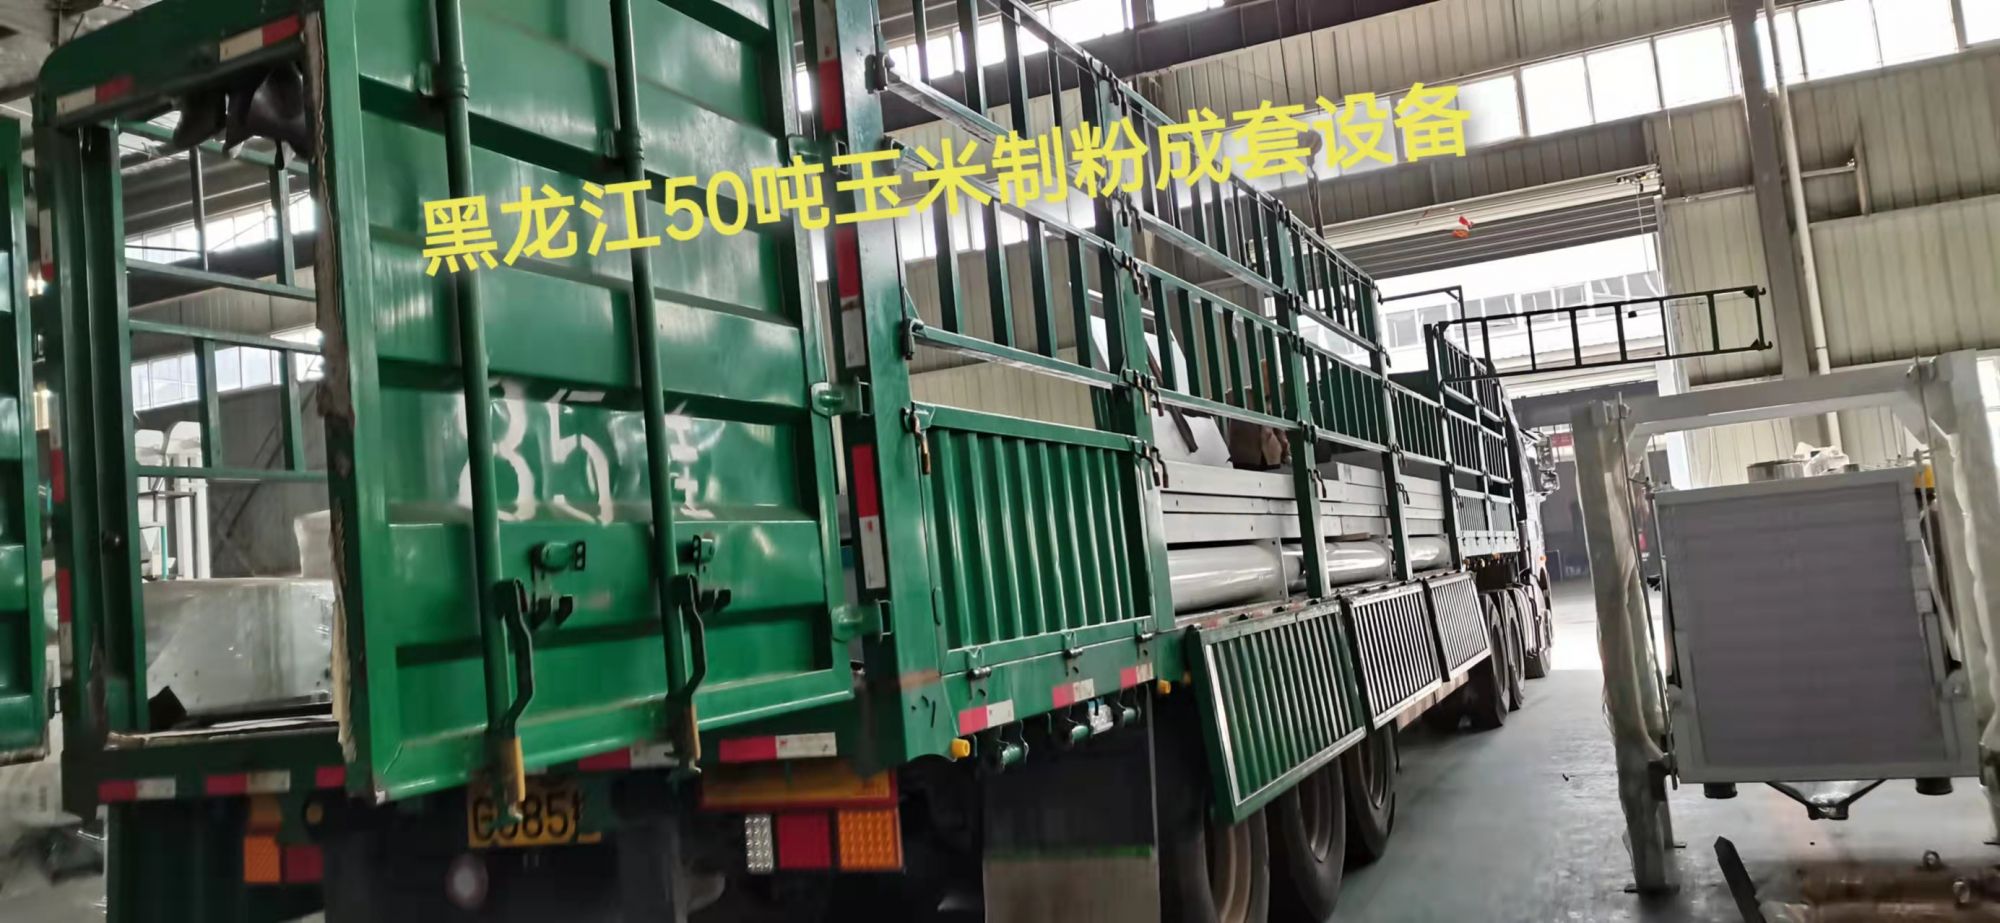 黑龙江尚志 50吨玉米制碴制粉成套设备